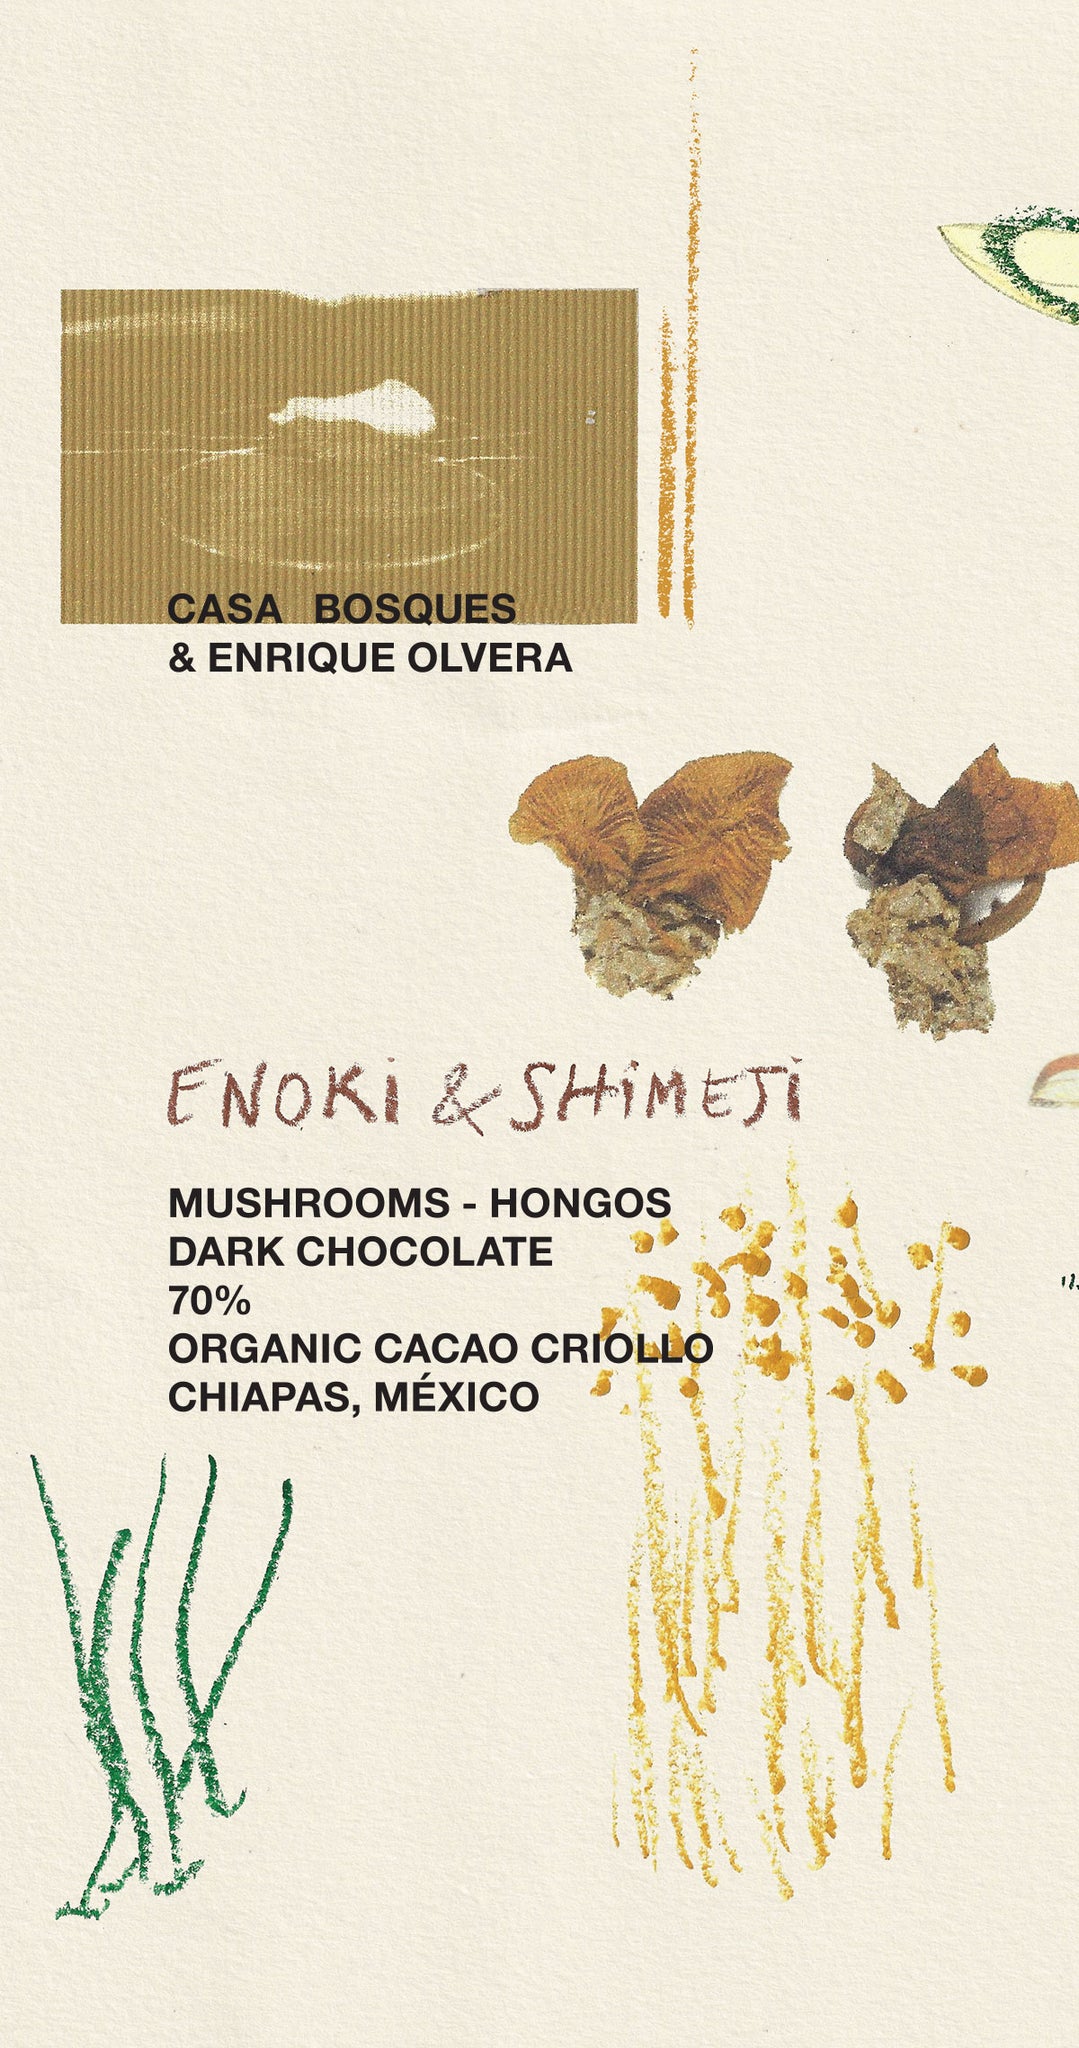 ENOKI & SHIMEJI MUSHROOMS - ENRIQUE OLVERA